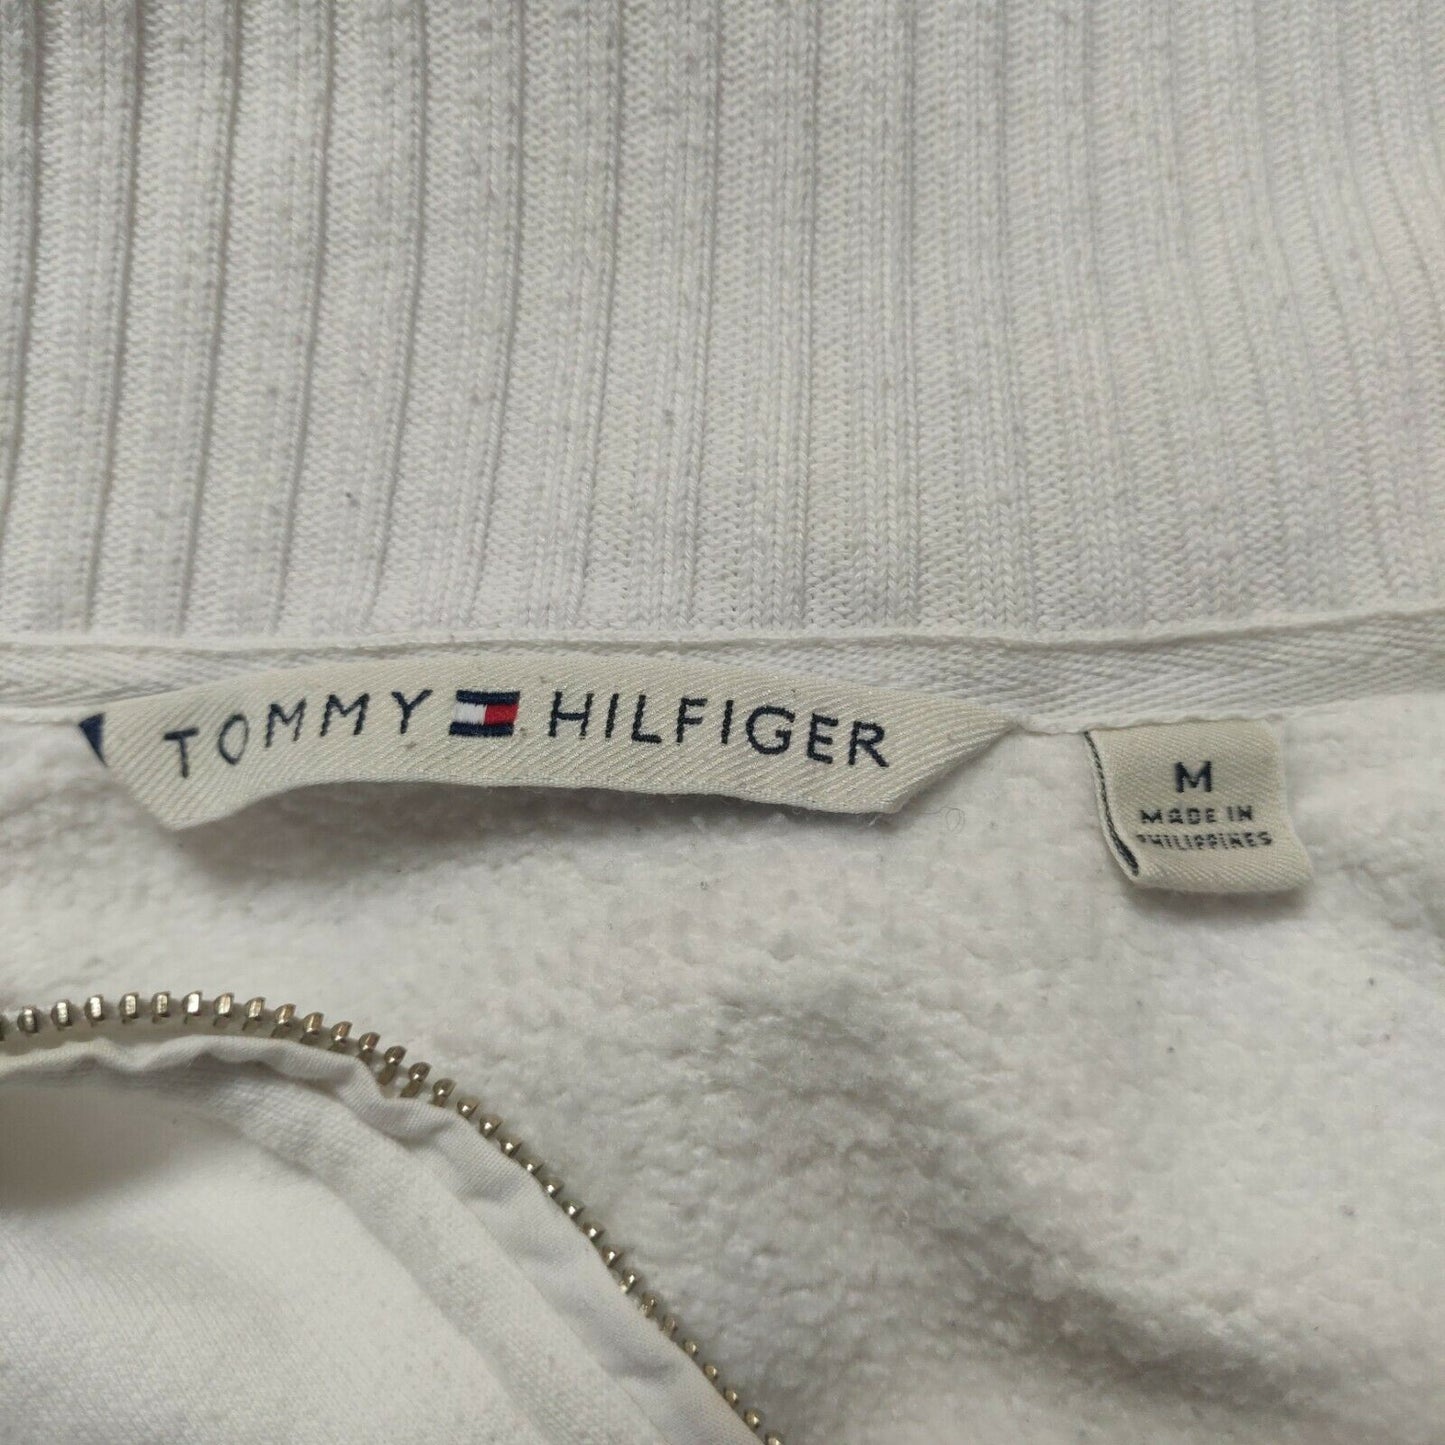 Tommy Hilfiger Beige Sweatshirt 1/4 Zip High Neck Women Size Medium